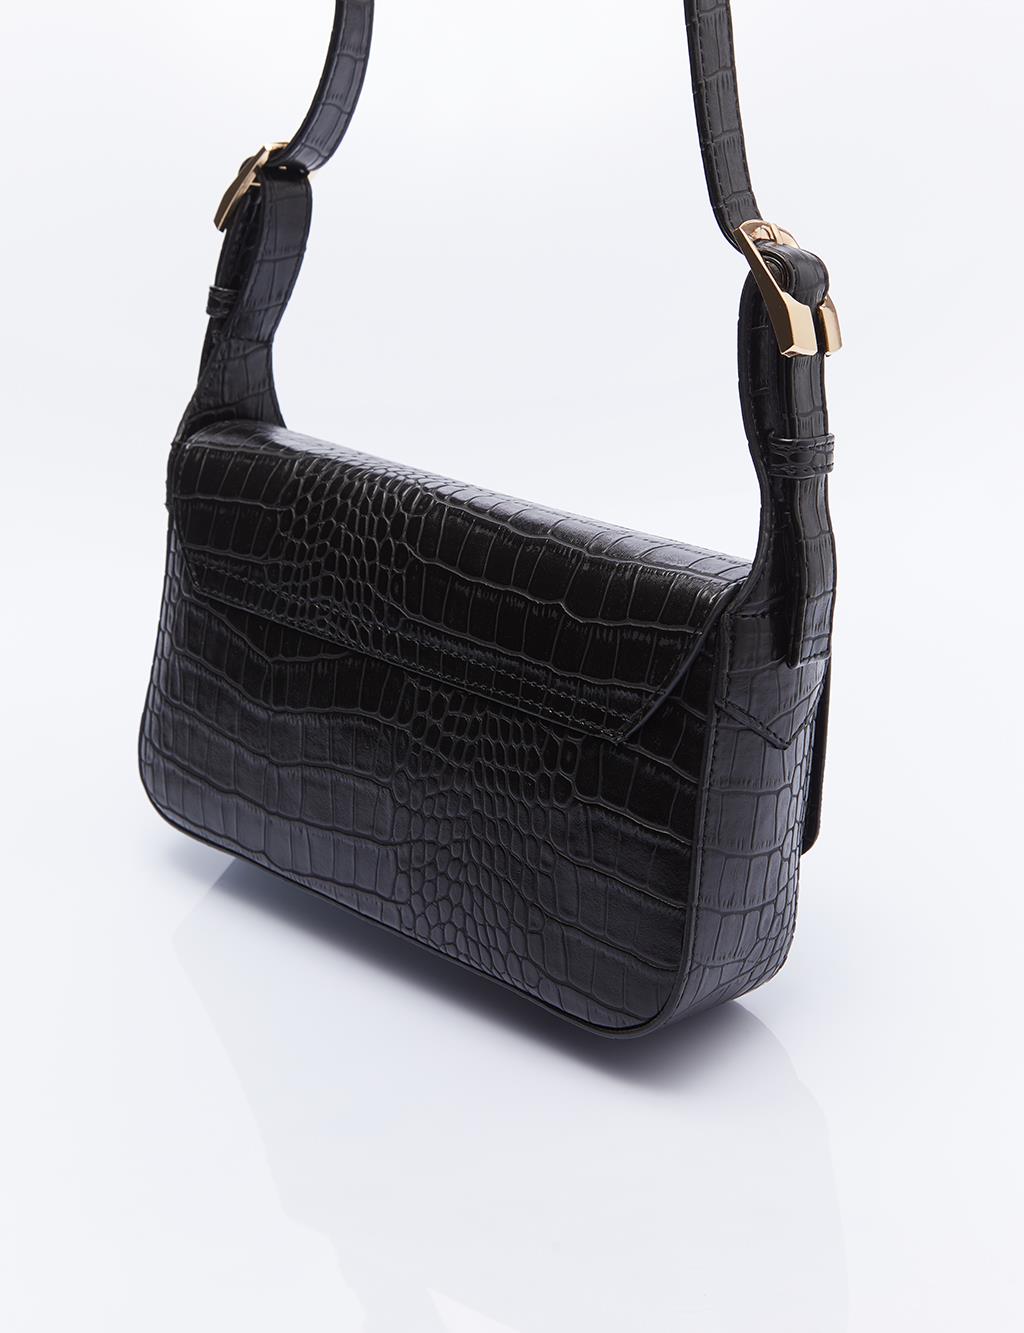 Rectangular Form Bag with Adjustable Strap Black